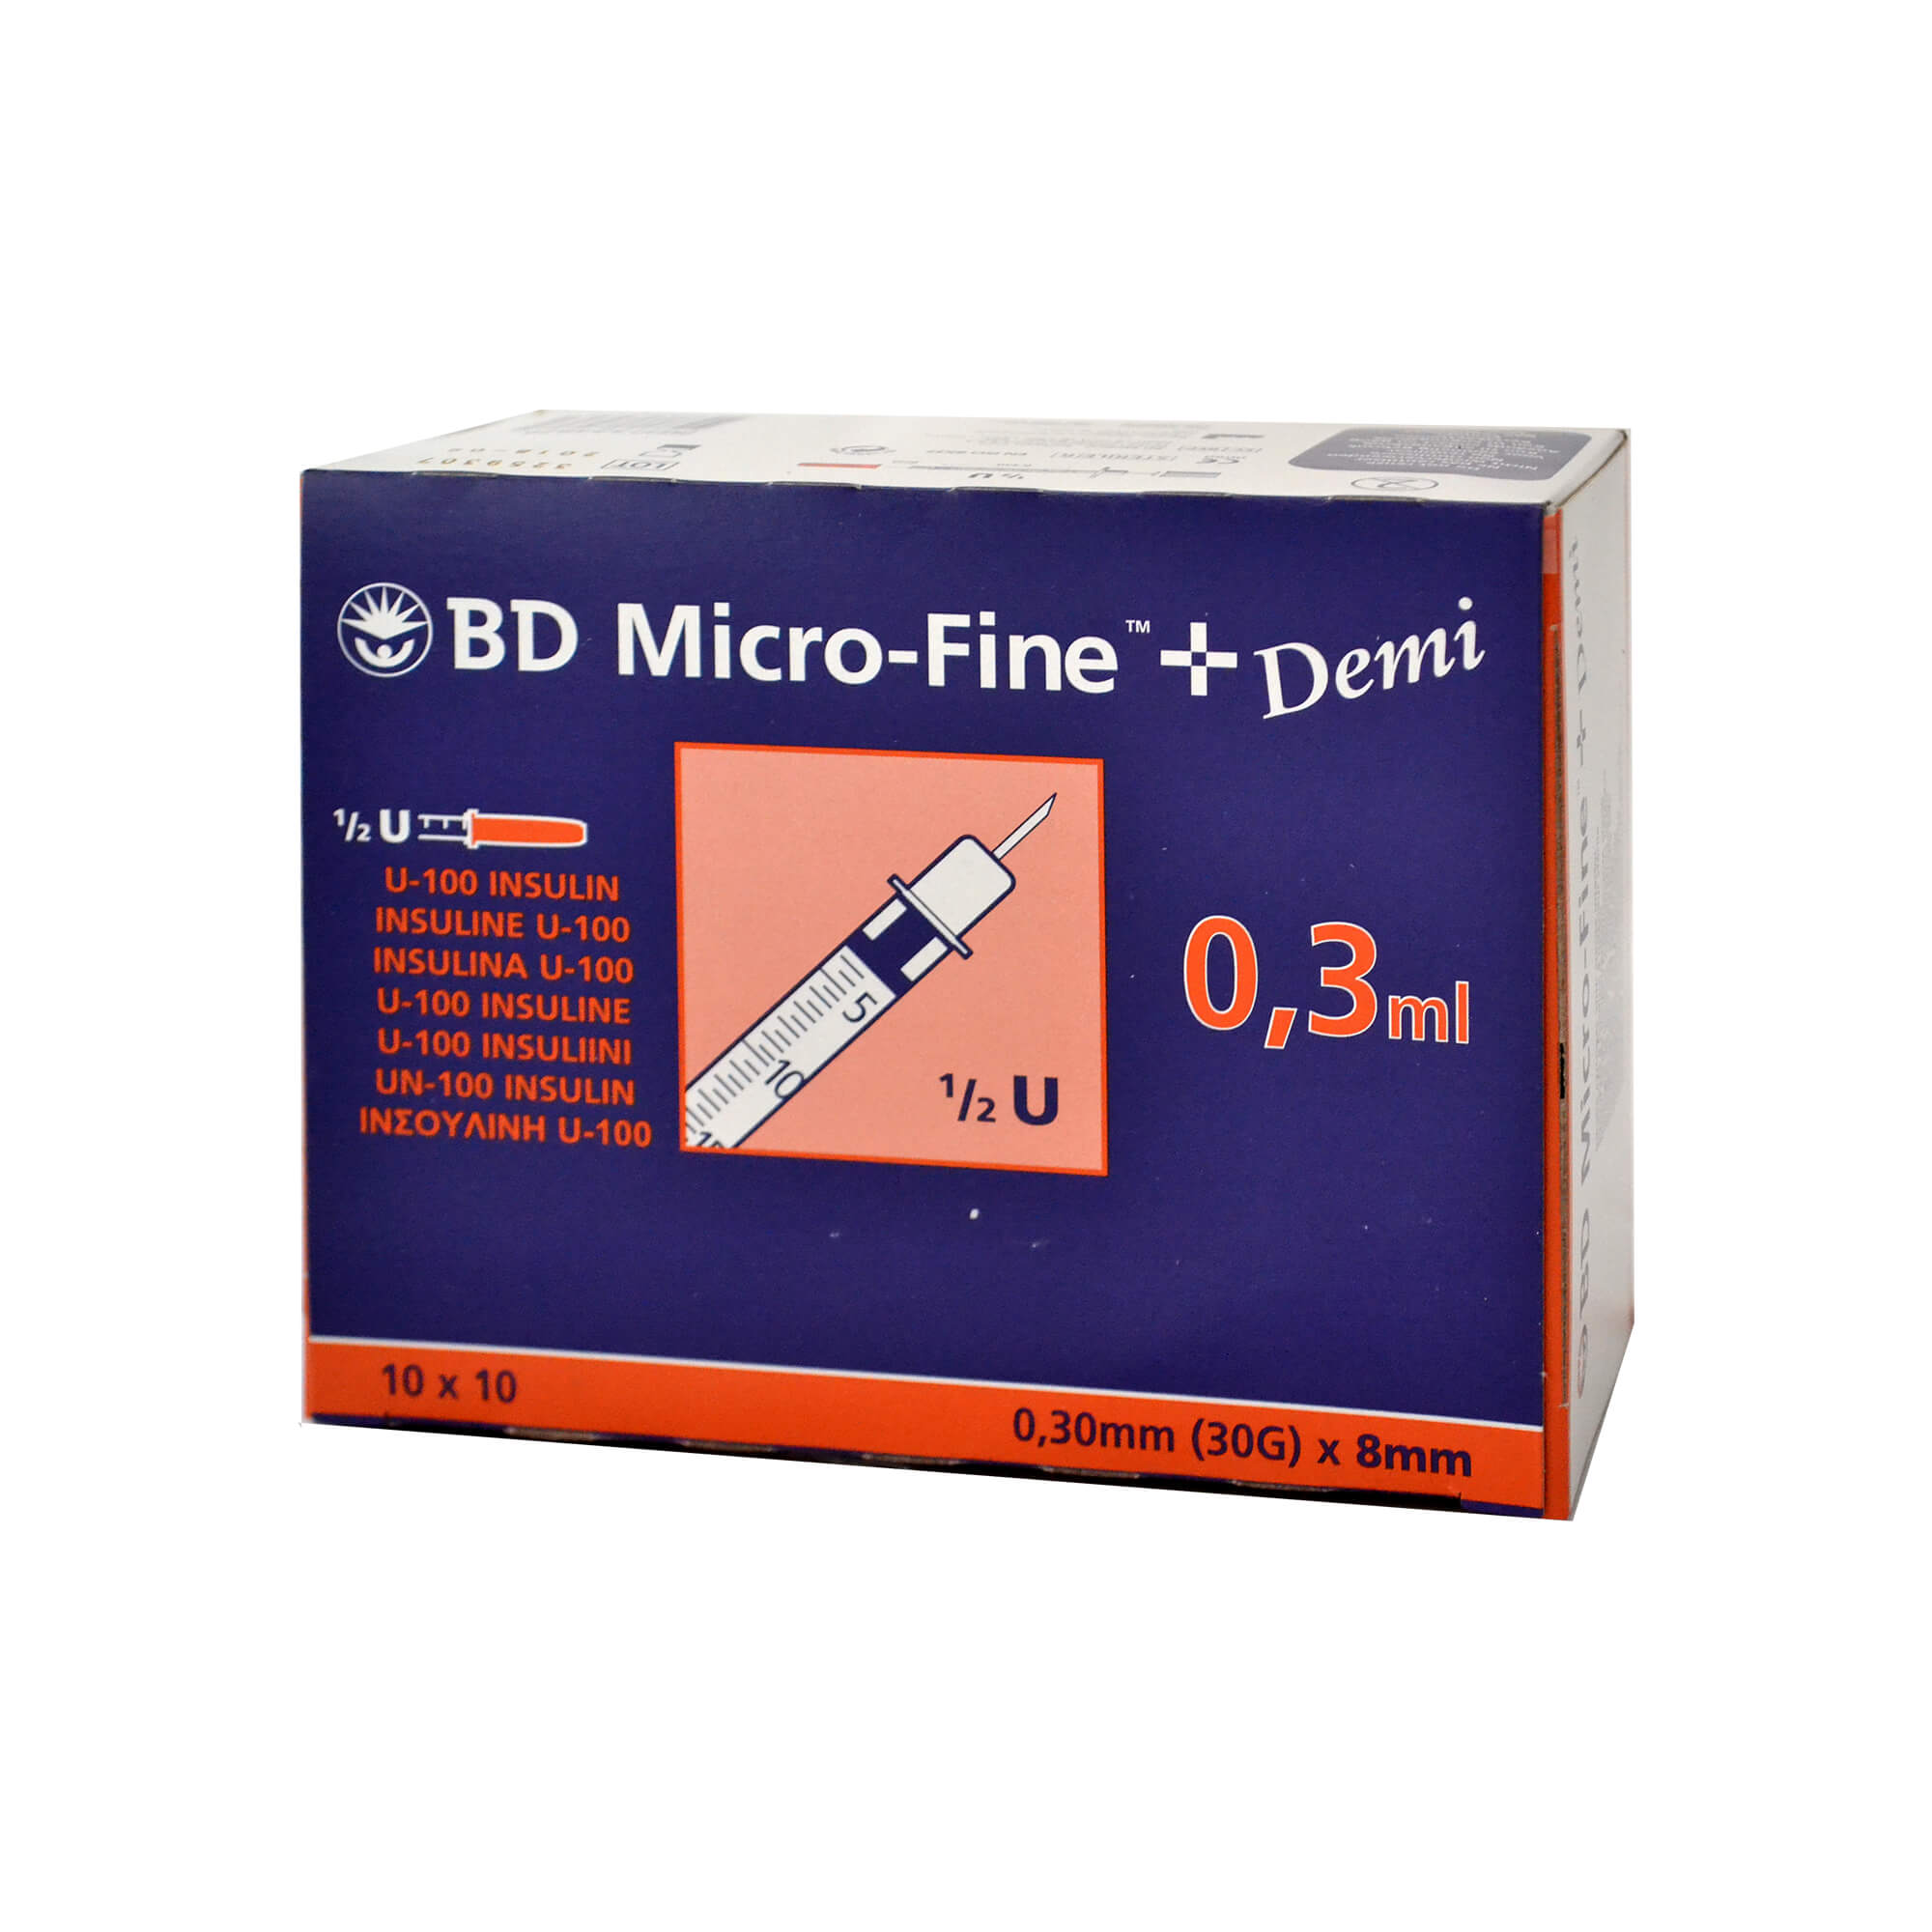 BD Micro-Fine+ Insulinspritzen 0,3 ml für U100-Insuline, Nadellänge: 8 mm, Nadelstärke: 0,30 mm.